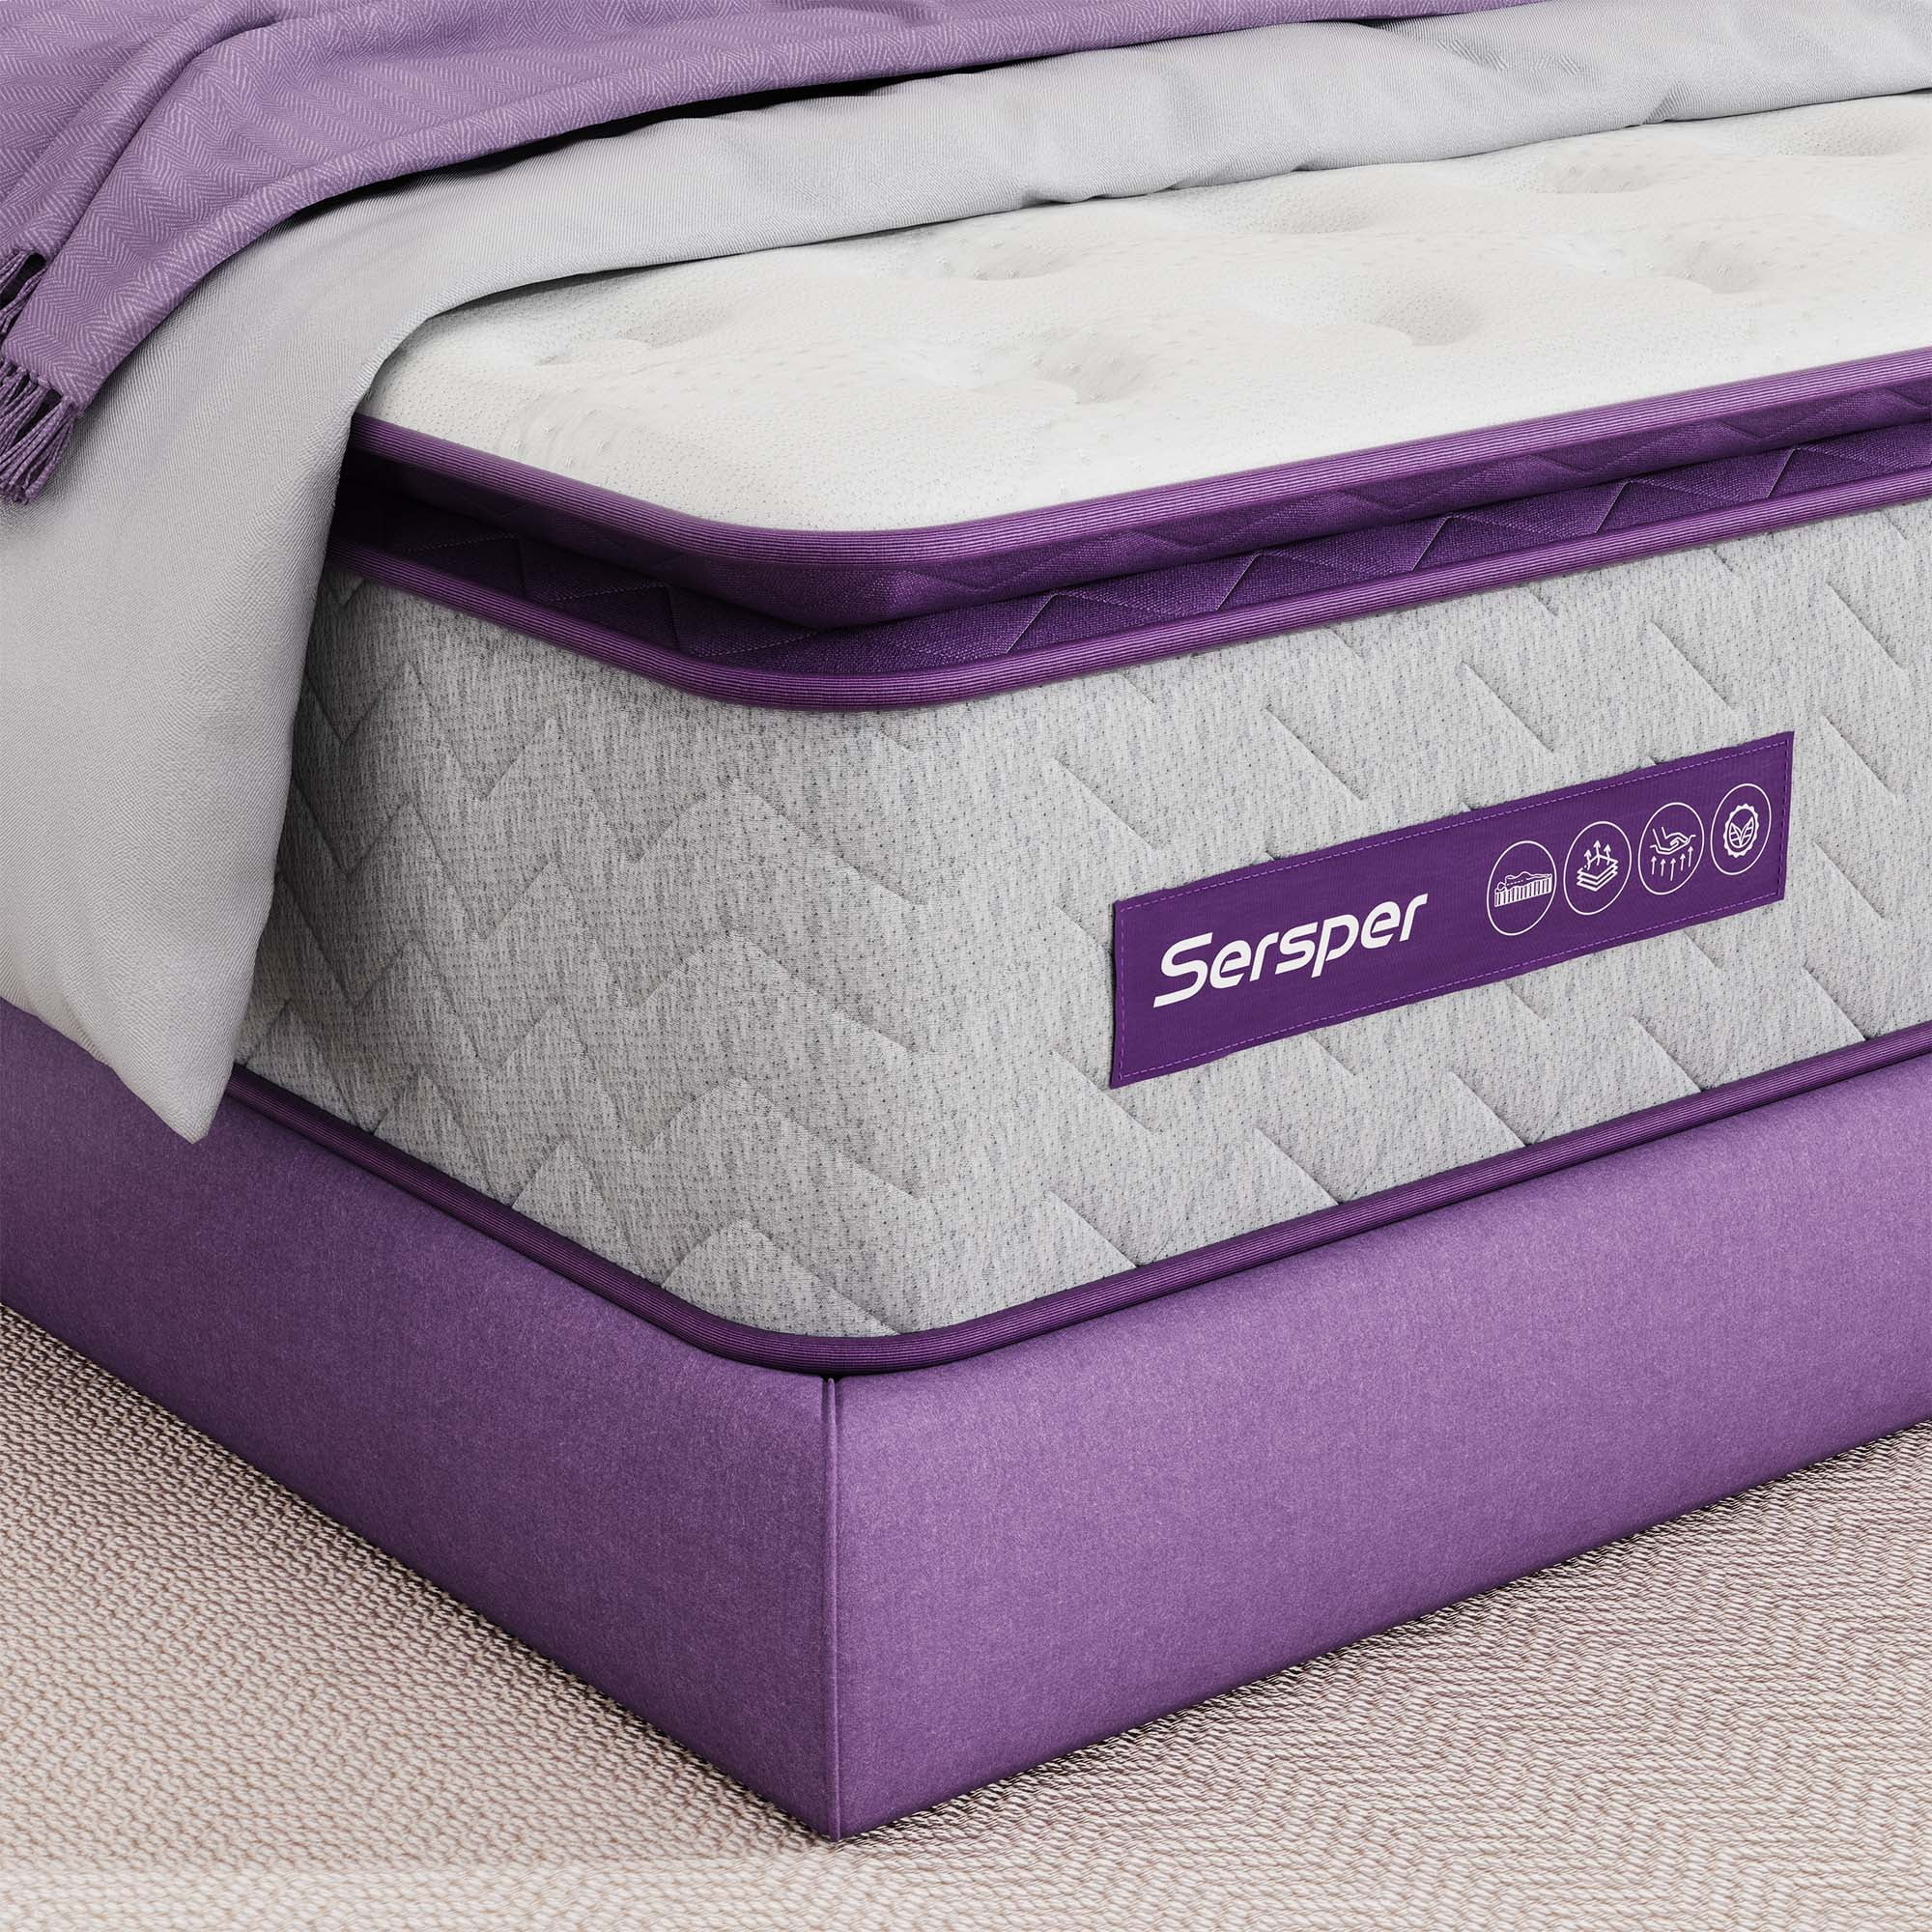 Sersper Full Size Hybrid Mattress, 10 inch Pillow Top Cooling Gel